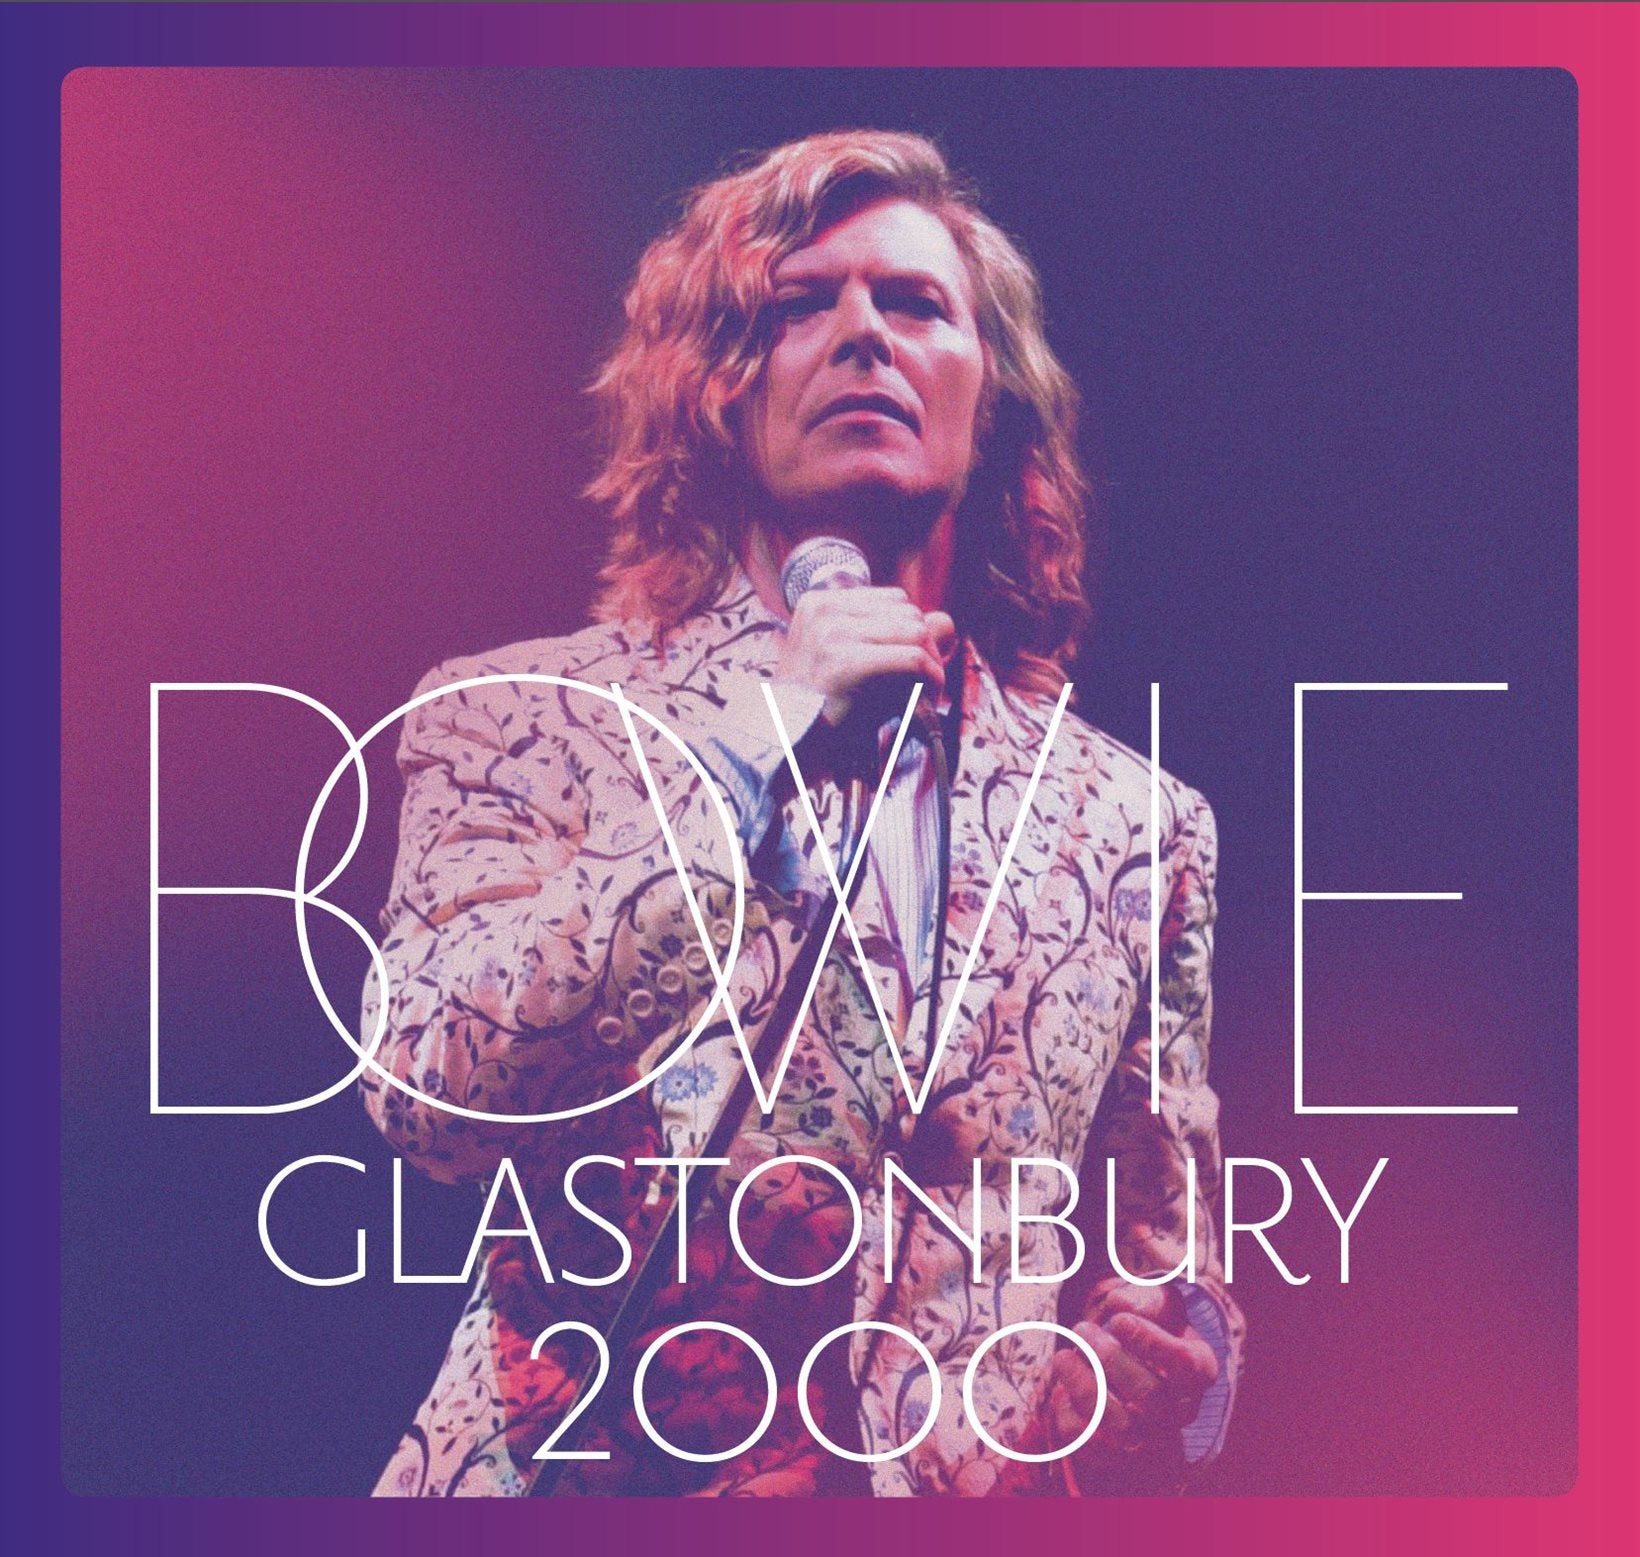 Bowie - Glastonbury 2000 (3LP)